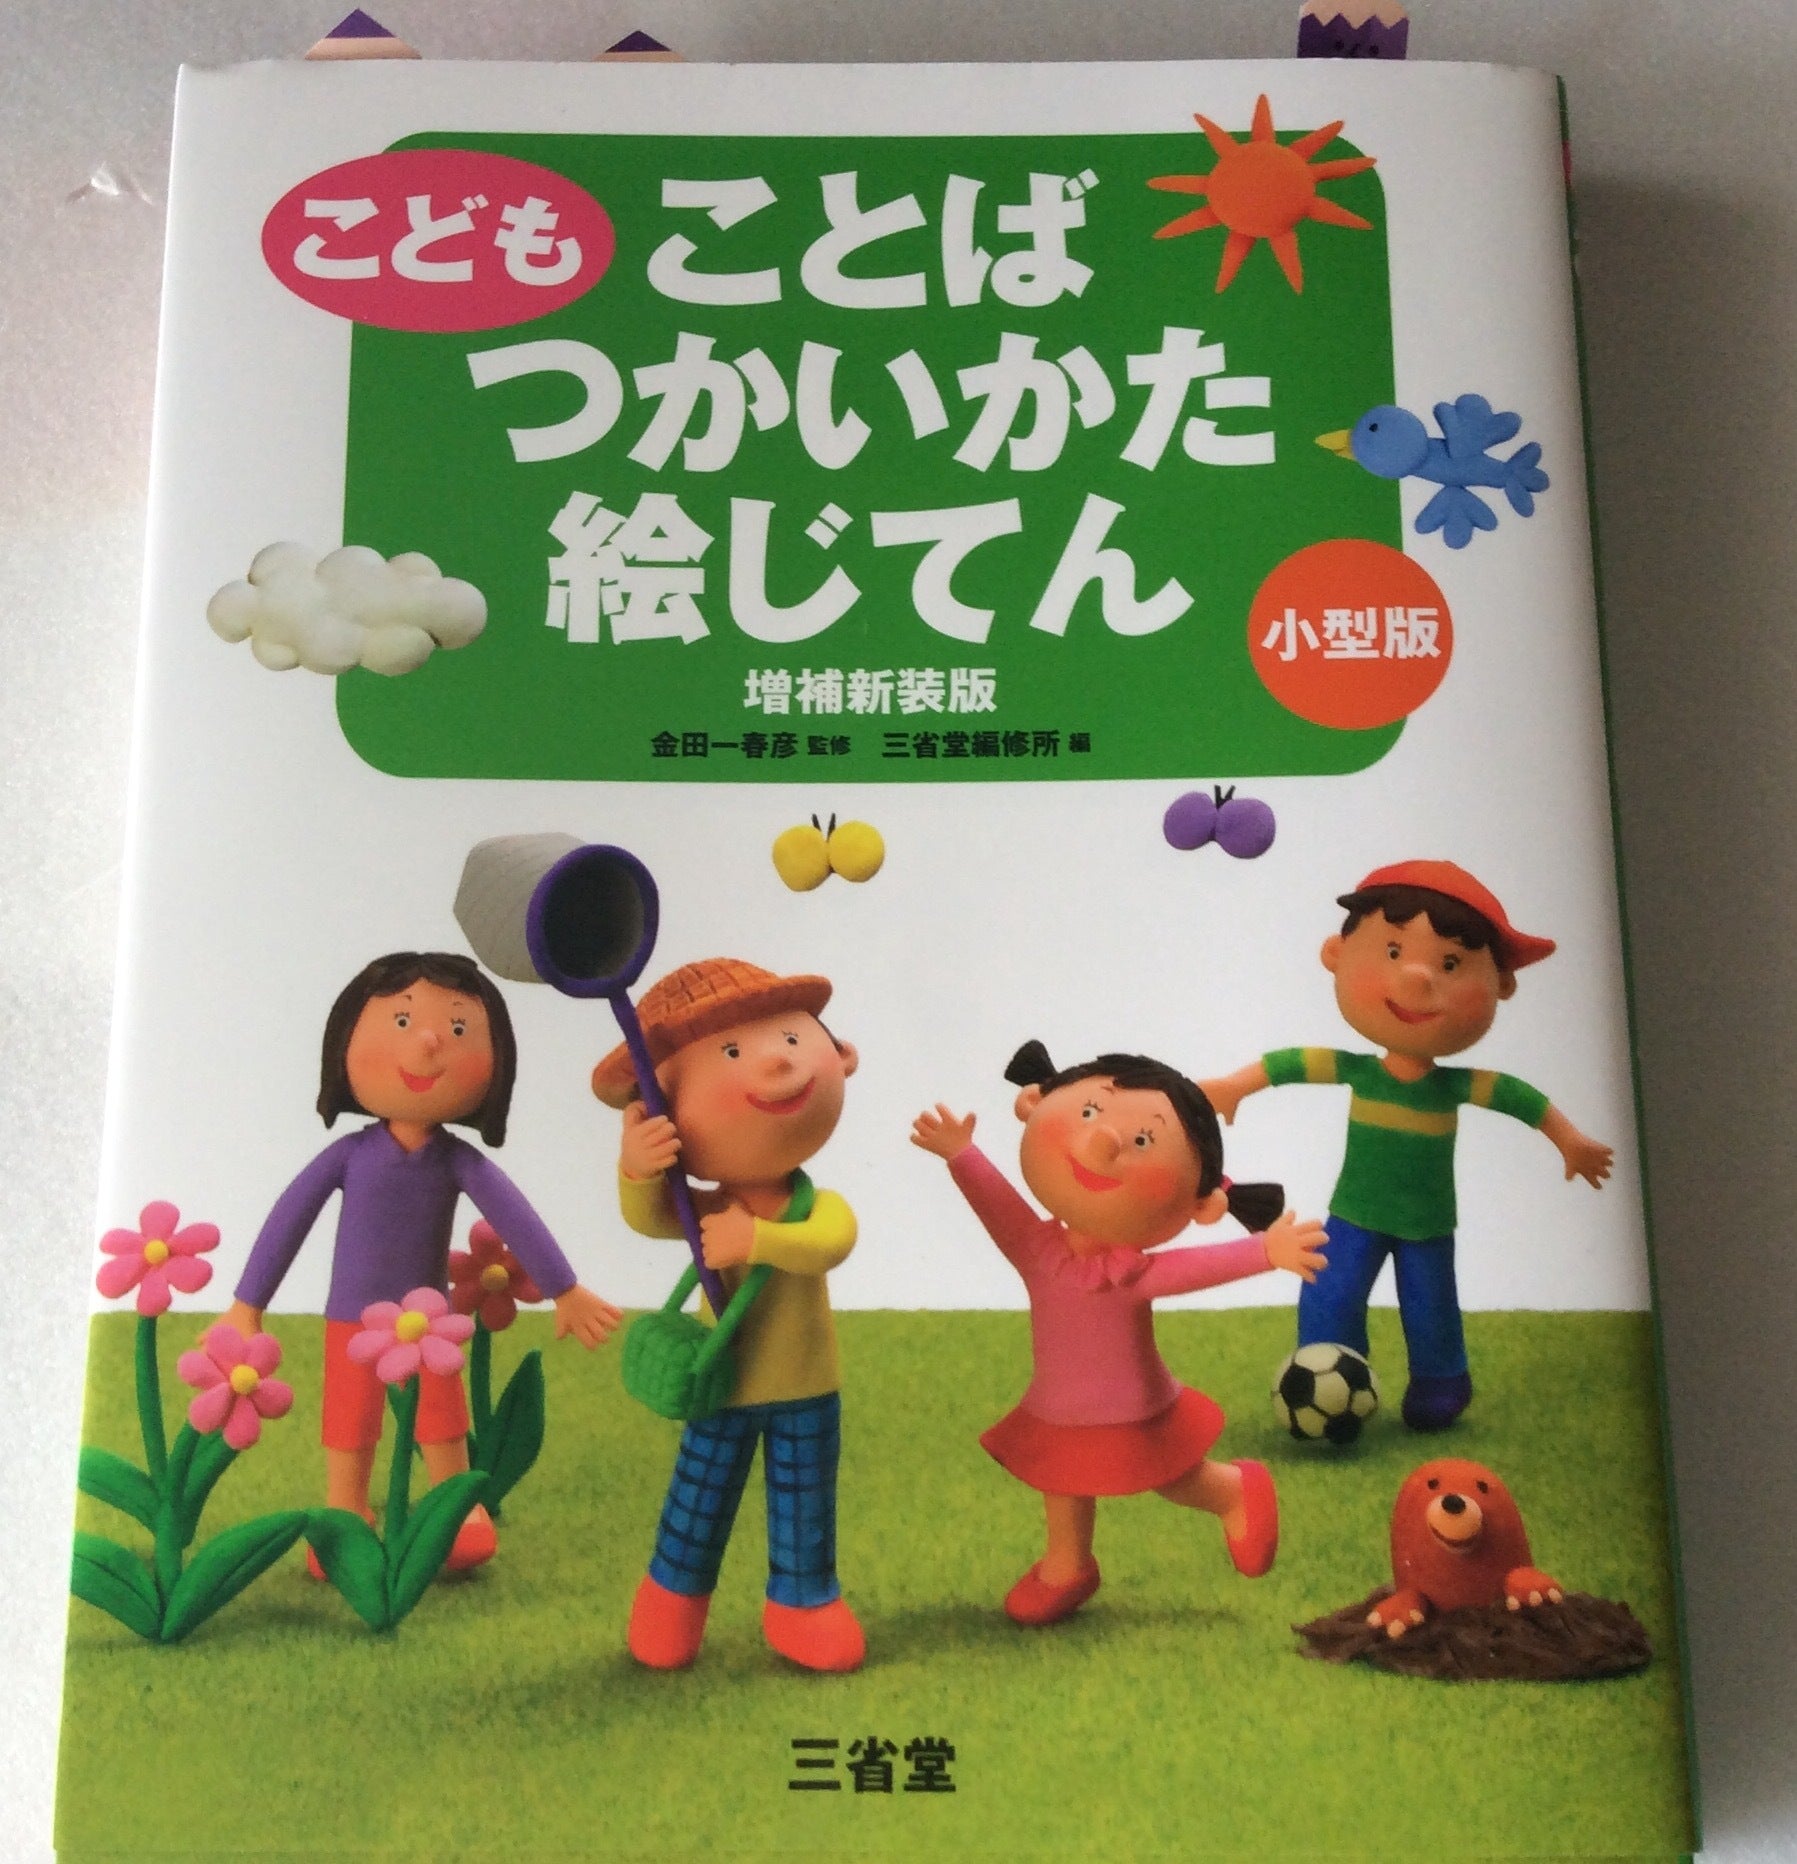 子どもでもわかる へぇー な使い方が載っています 発達障害児専門の 読み 書き そろばん を教える広島の学習塾